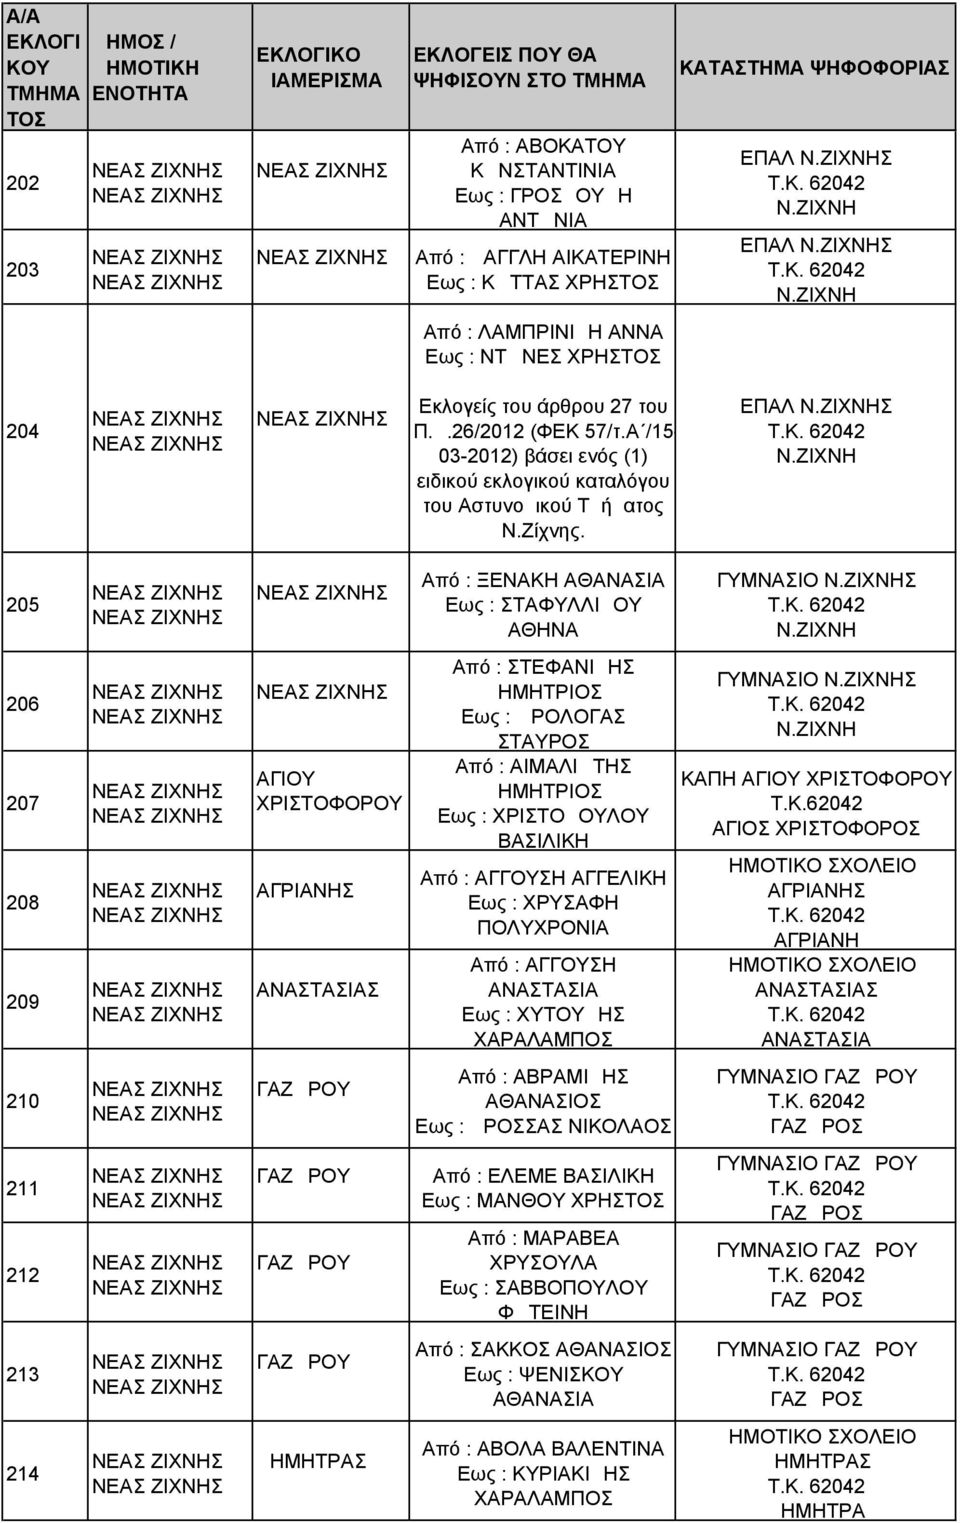 Α /15-03-2012) βάσει ενός (1) ειδικού εκλογικού καταλόγου του Αστυνομικού Τμήματος Ν.Ζίχνης. ΕΠΑΛ Ν.ΖΙΧΝΗΣ Τ.Κ. 62042 Ν.